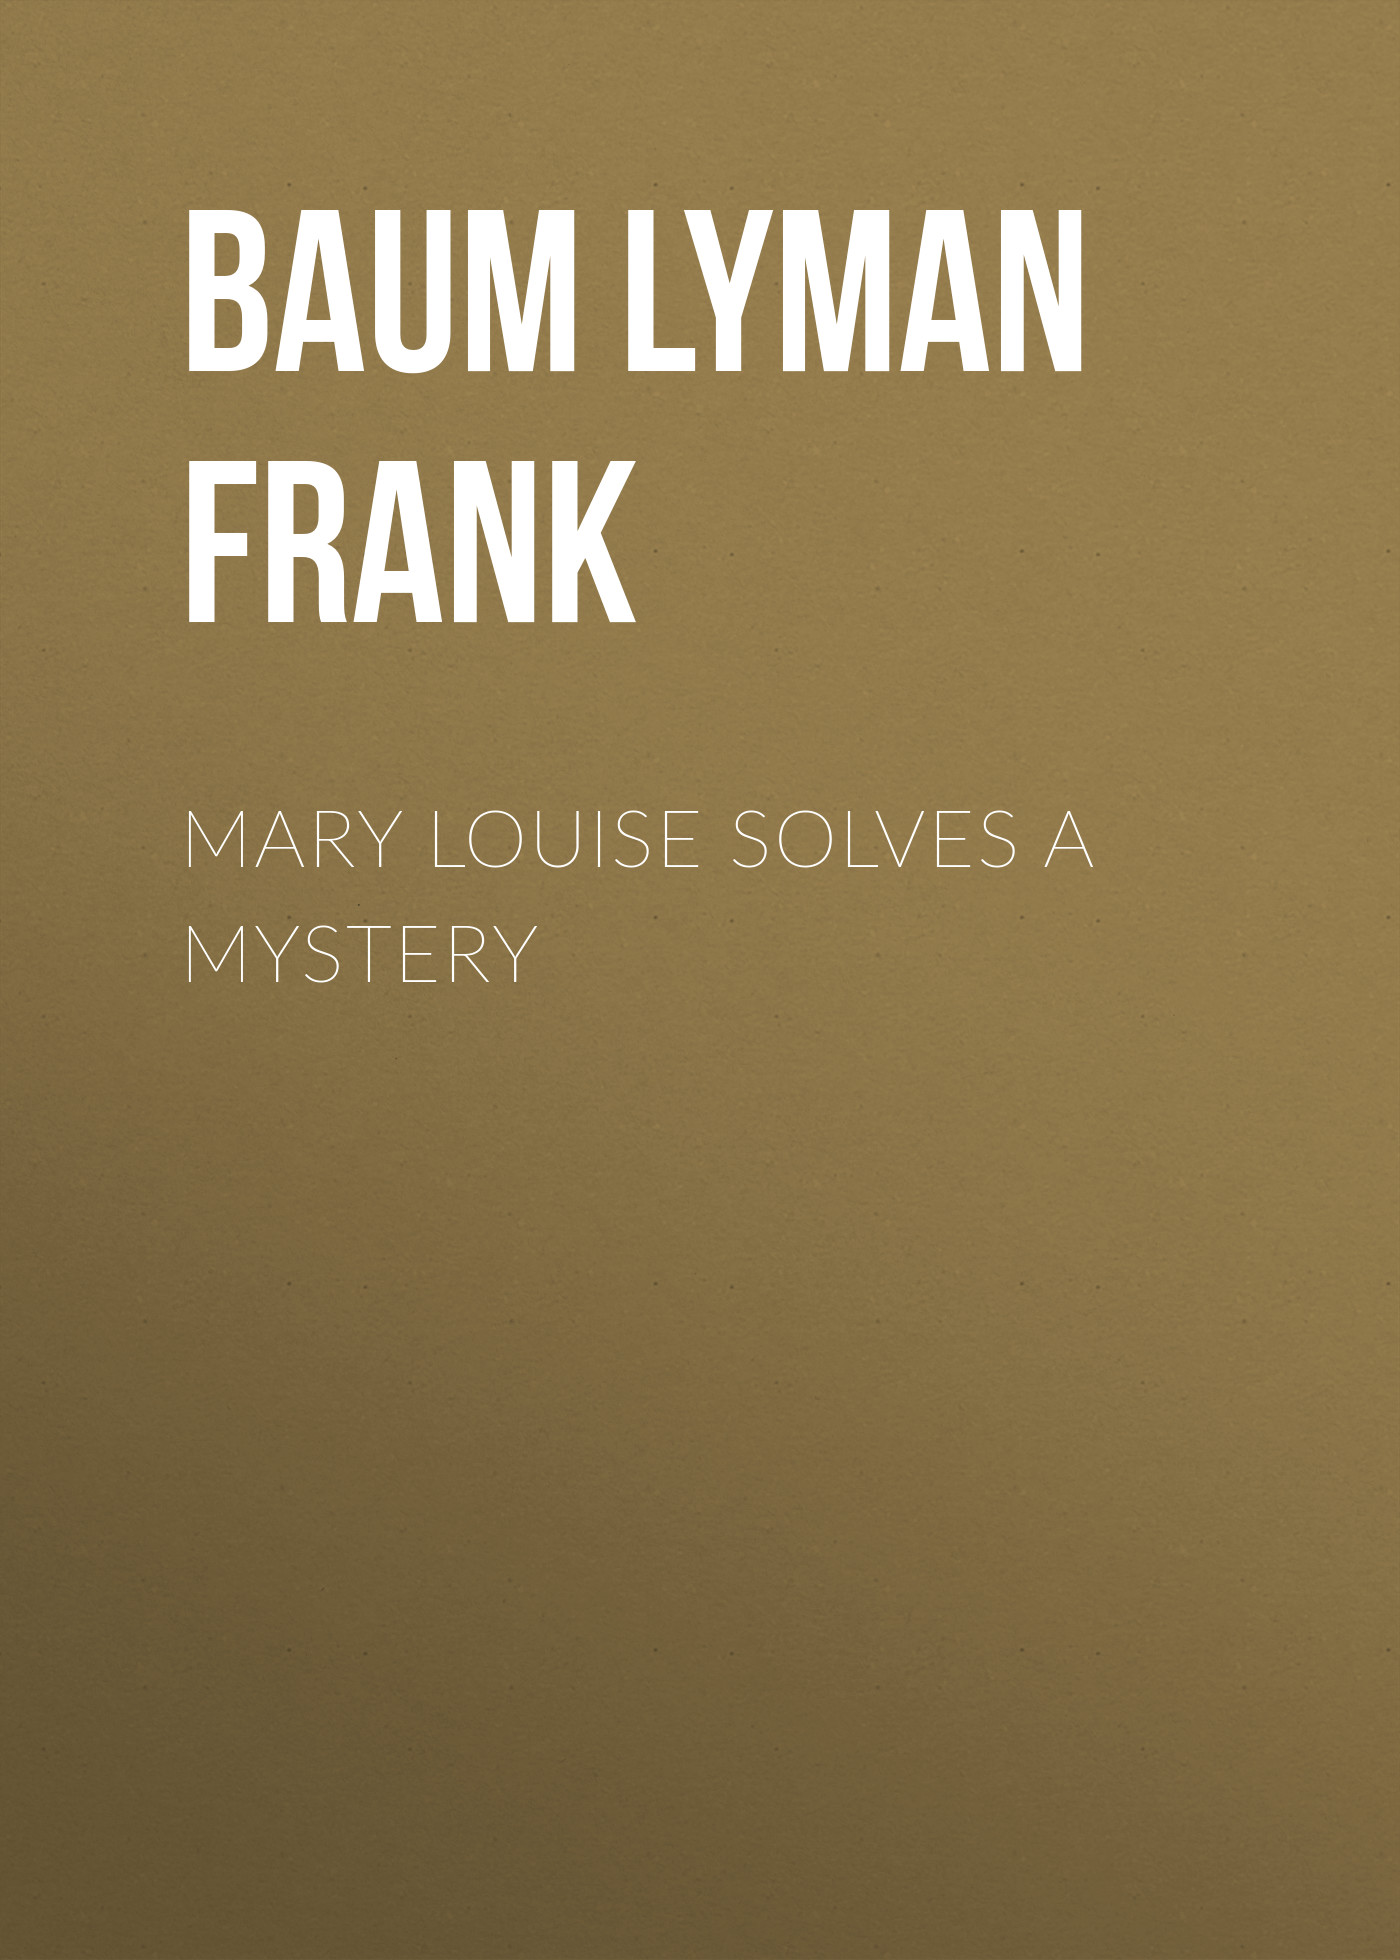 Книга Mary Louise Solves a Mystery из серии , созданная Lyman Baum, может относится к жанру Зарубежная старинная литература, Зарубежная классика. Стоимость электронной книги Mary Louise Solves a Mystery с идентификатором 25019339 составляет 0 руб.